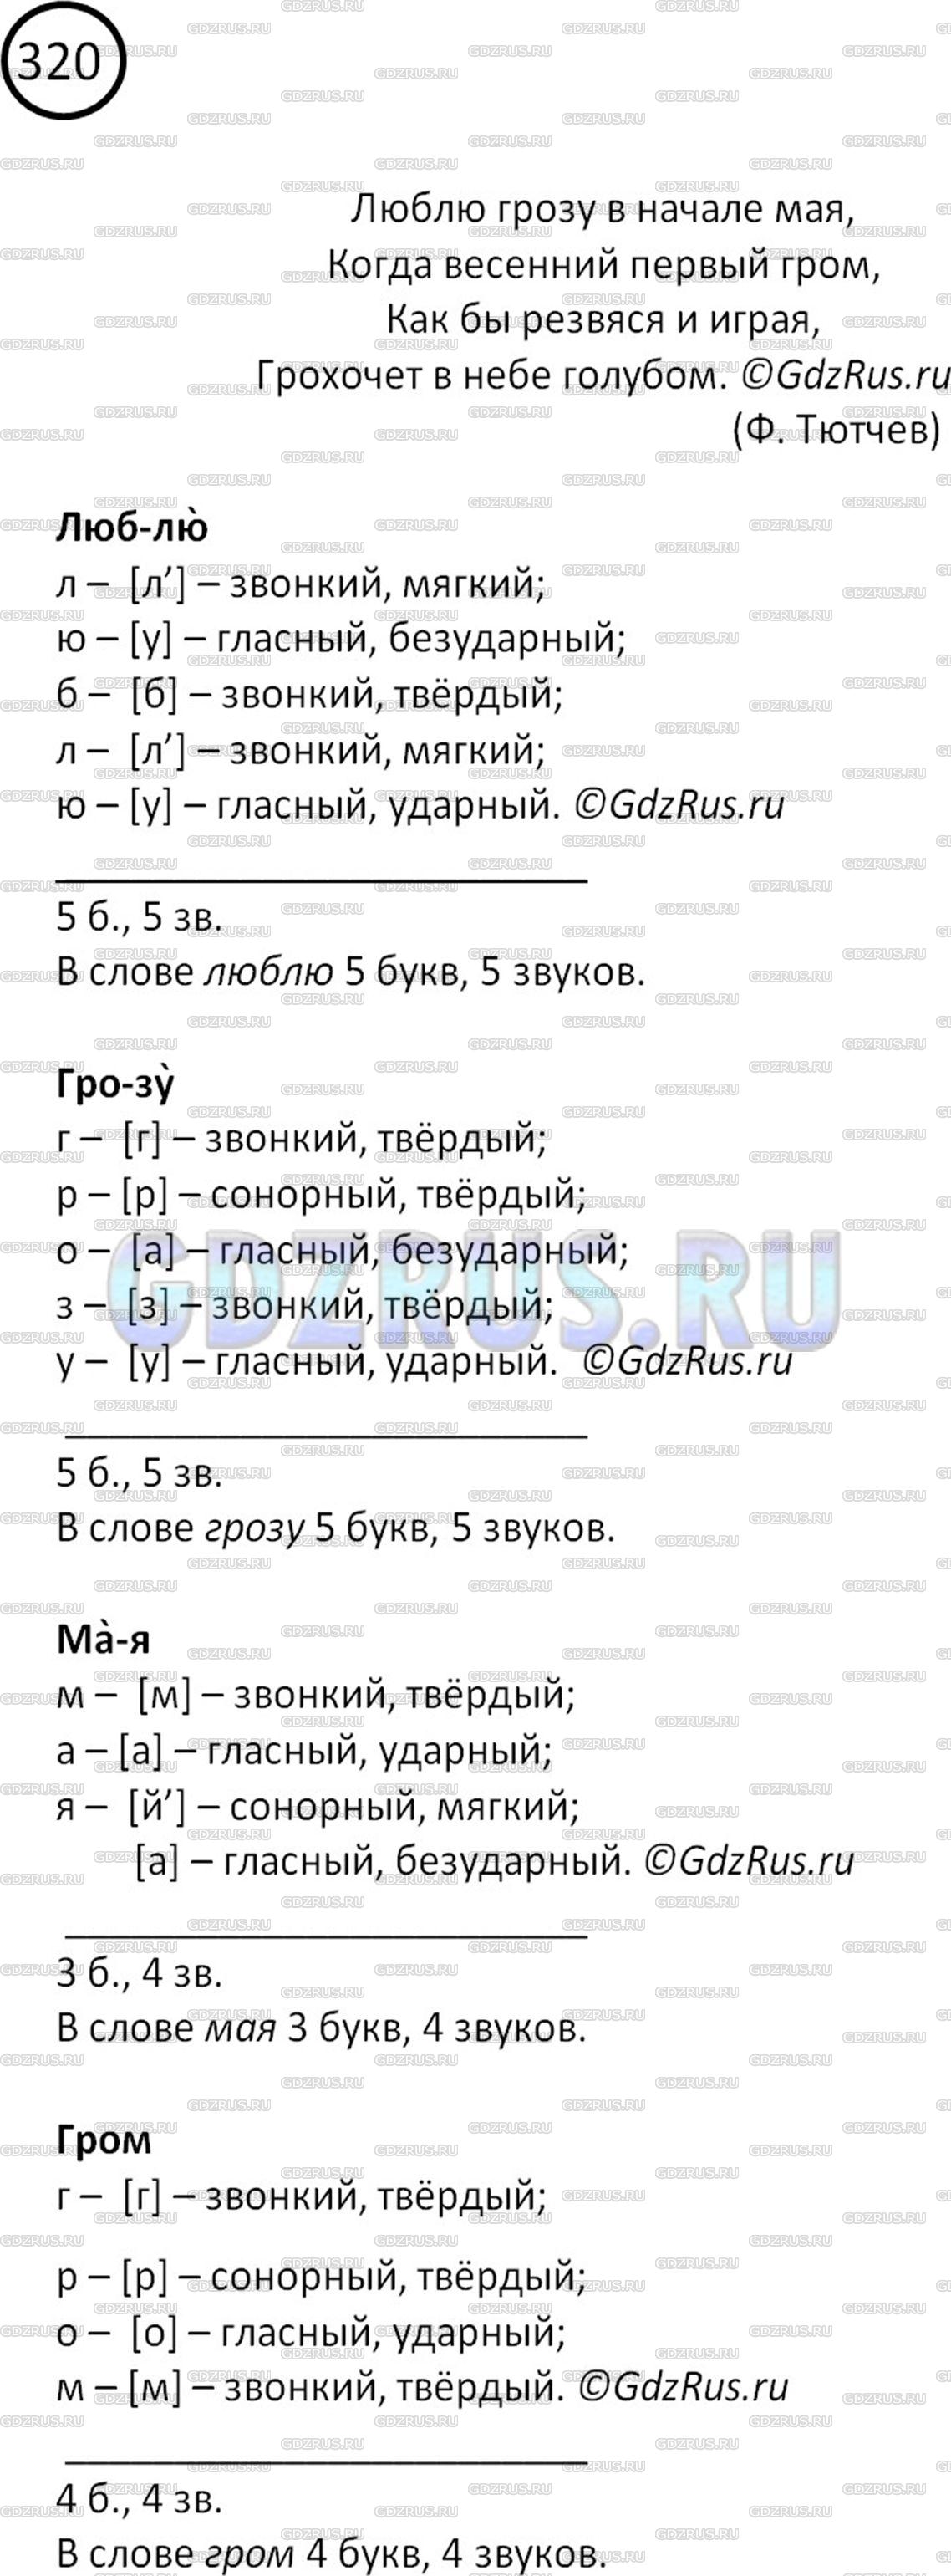 Фото решения 2: Номер №320 из ГДЗ по Русскому языку 5 класс: Ладыженская Т.А. 2012г.